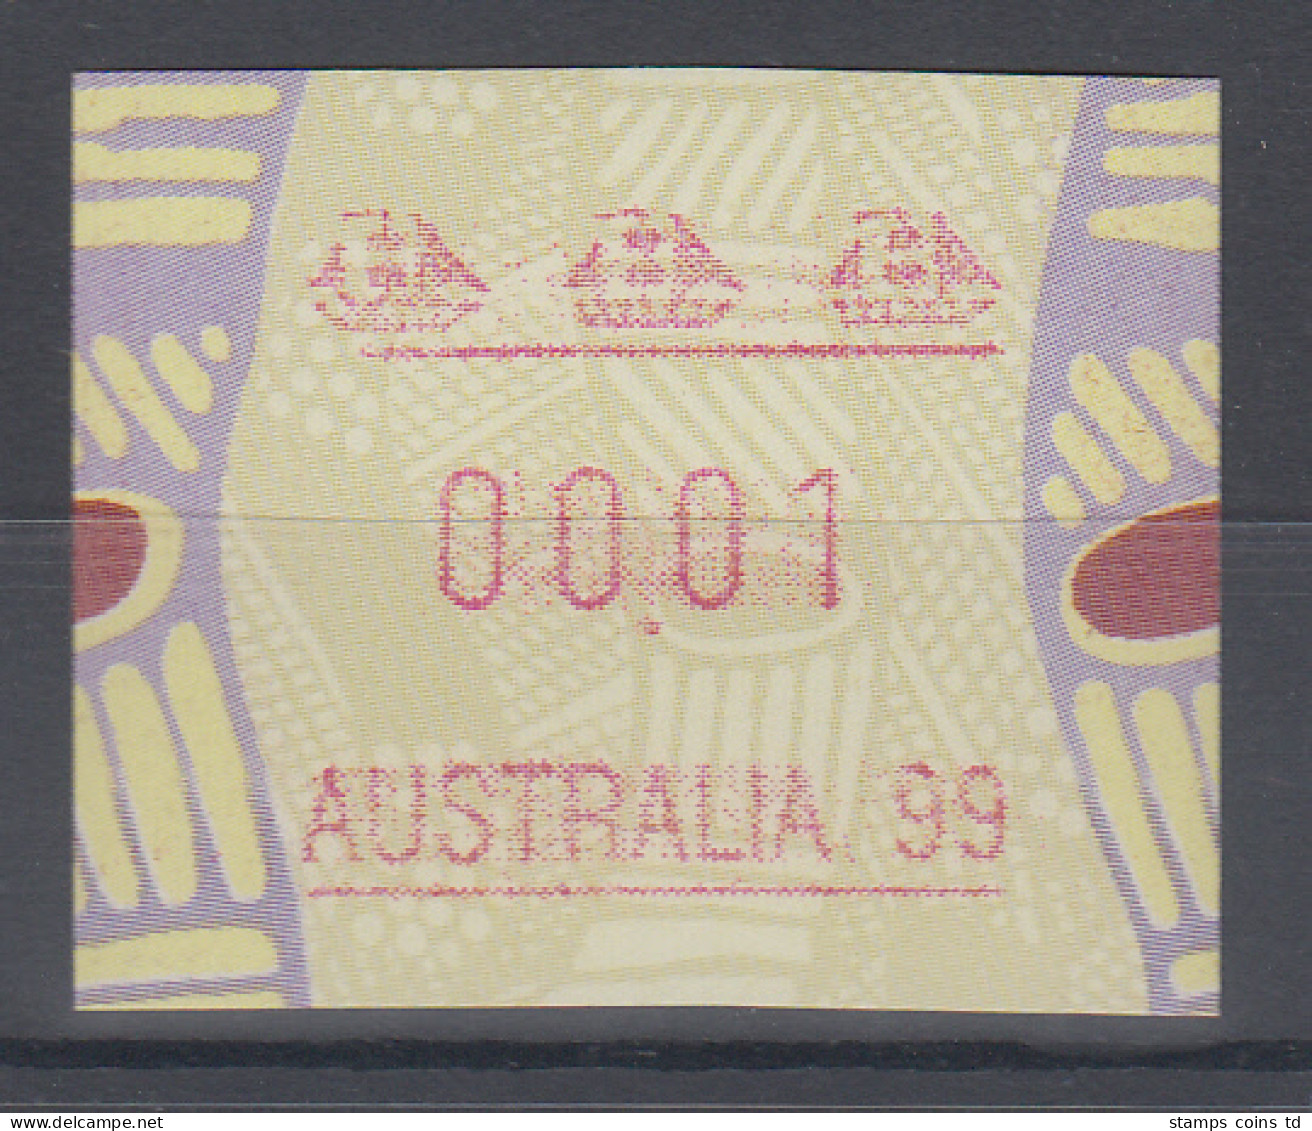 Australien Frama-ATM Aboriginal-Art Sonderausgabe Australia 99 ** Linie Kurz  - Machine Labels [ATM]